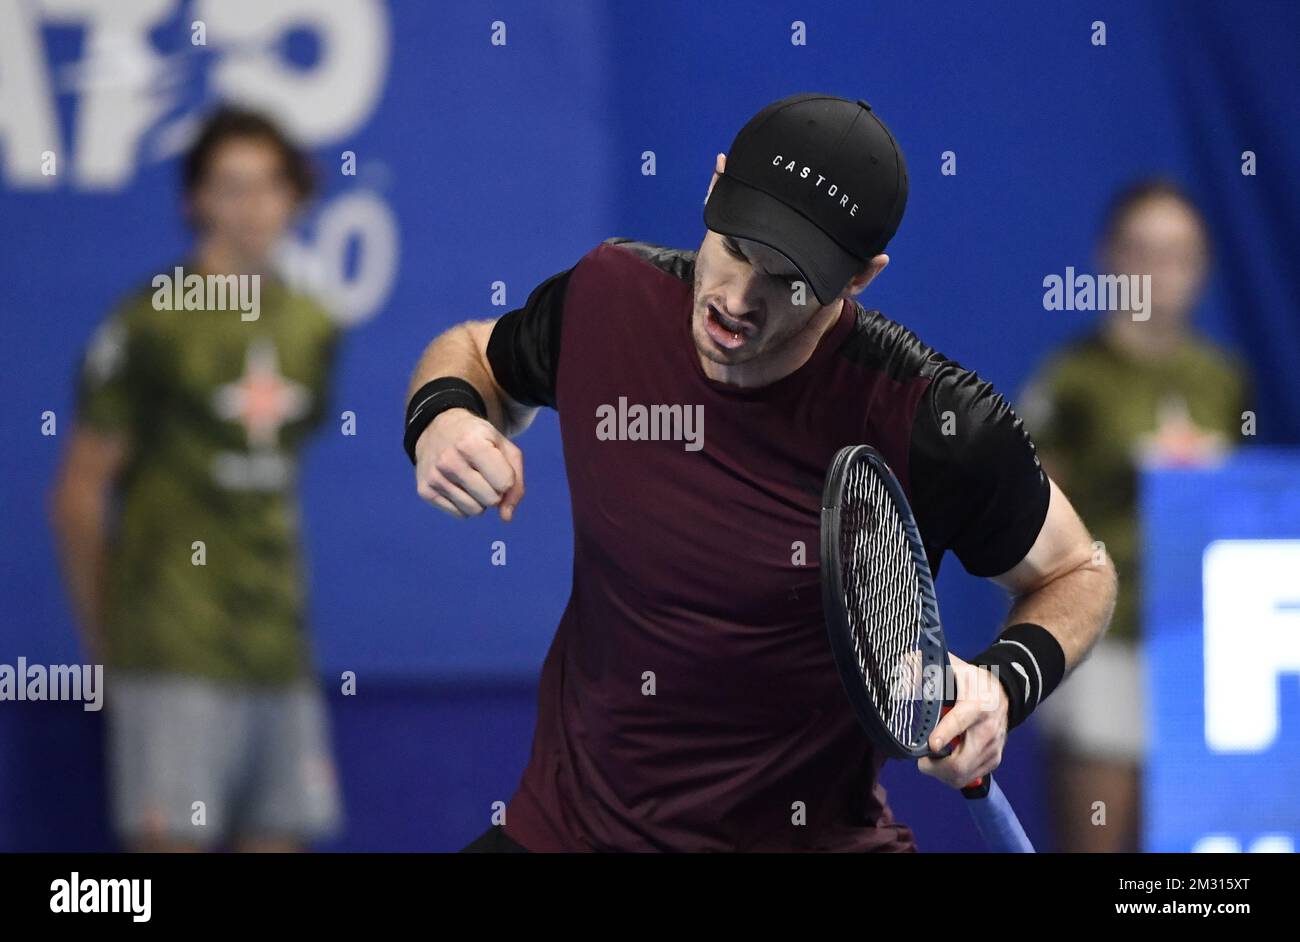 Le Britannique Andy Murray réagit lors d'un match de tennis contre le  Suisse Stanislas Wawrinka, lors de la finale du tournoi de singles hommes à  l'European Open ATP Anvers, dimanche 20 octobre